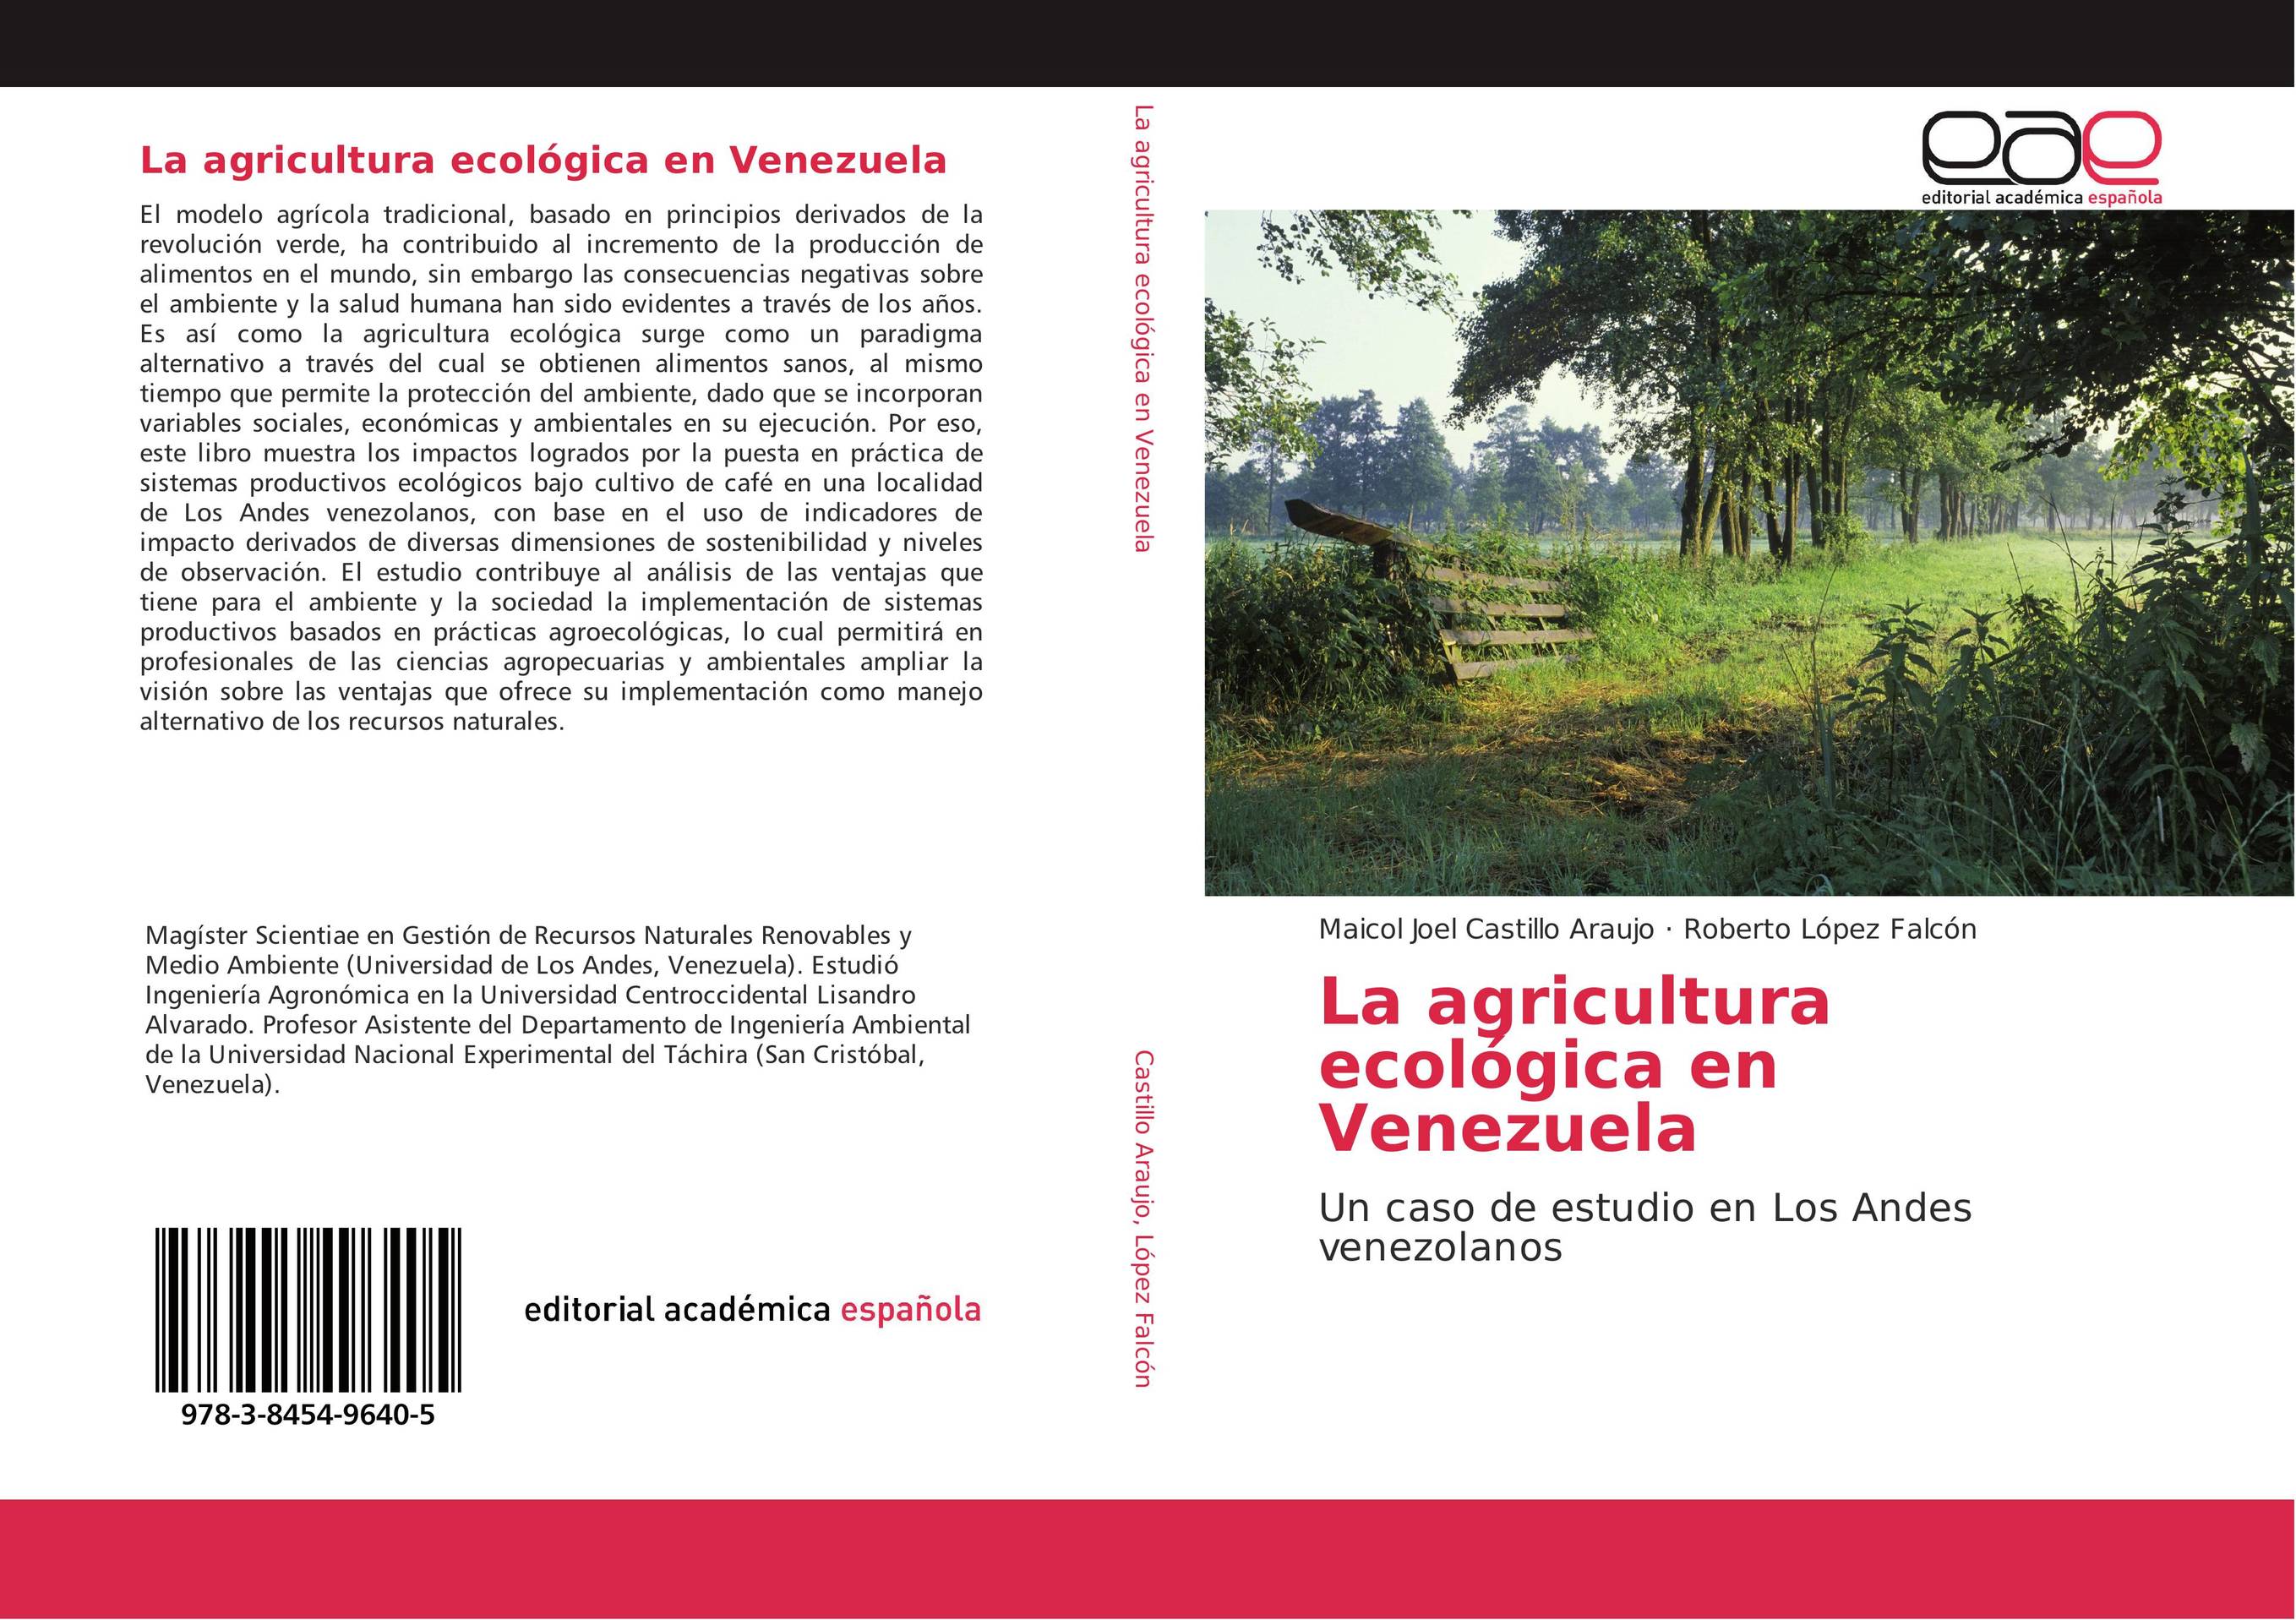 La agricultura ecológica en Venezuela